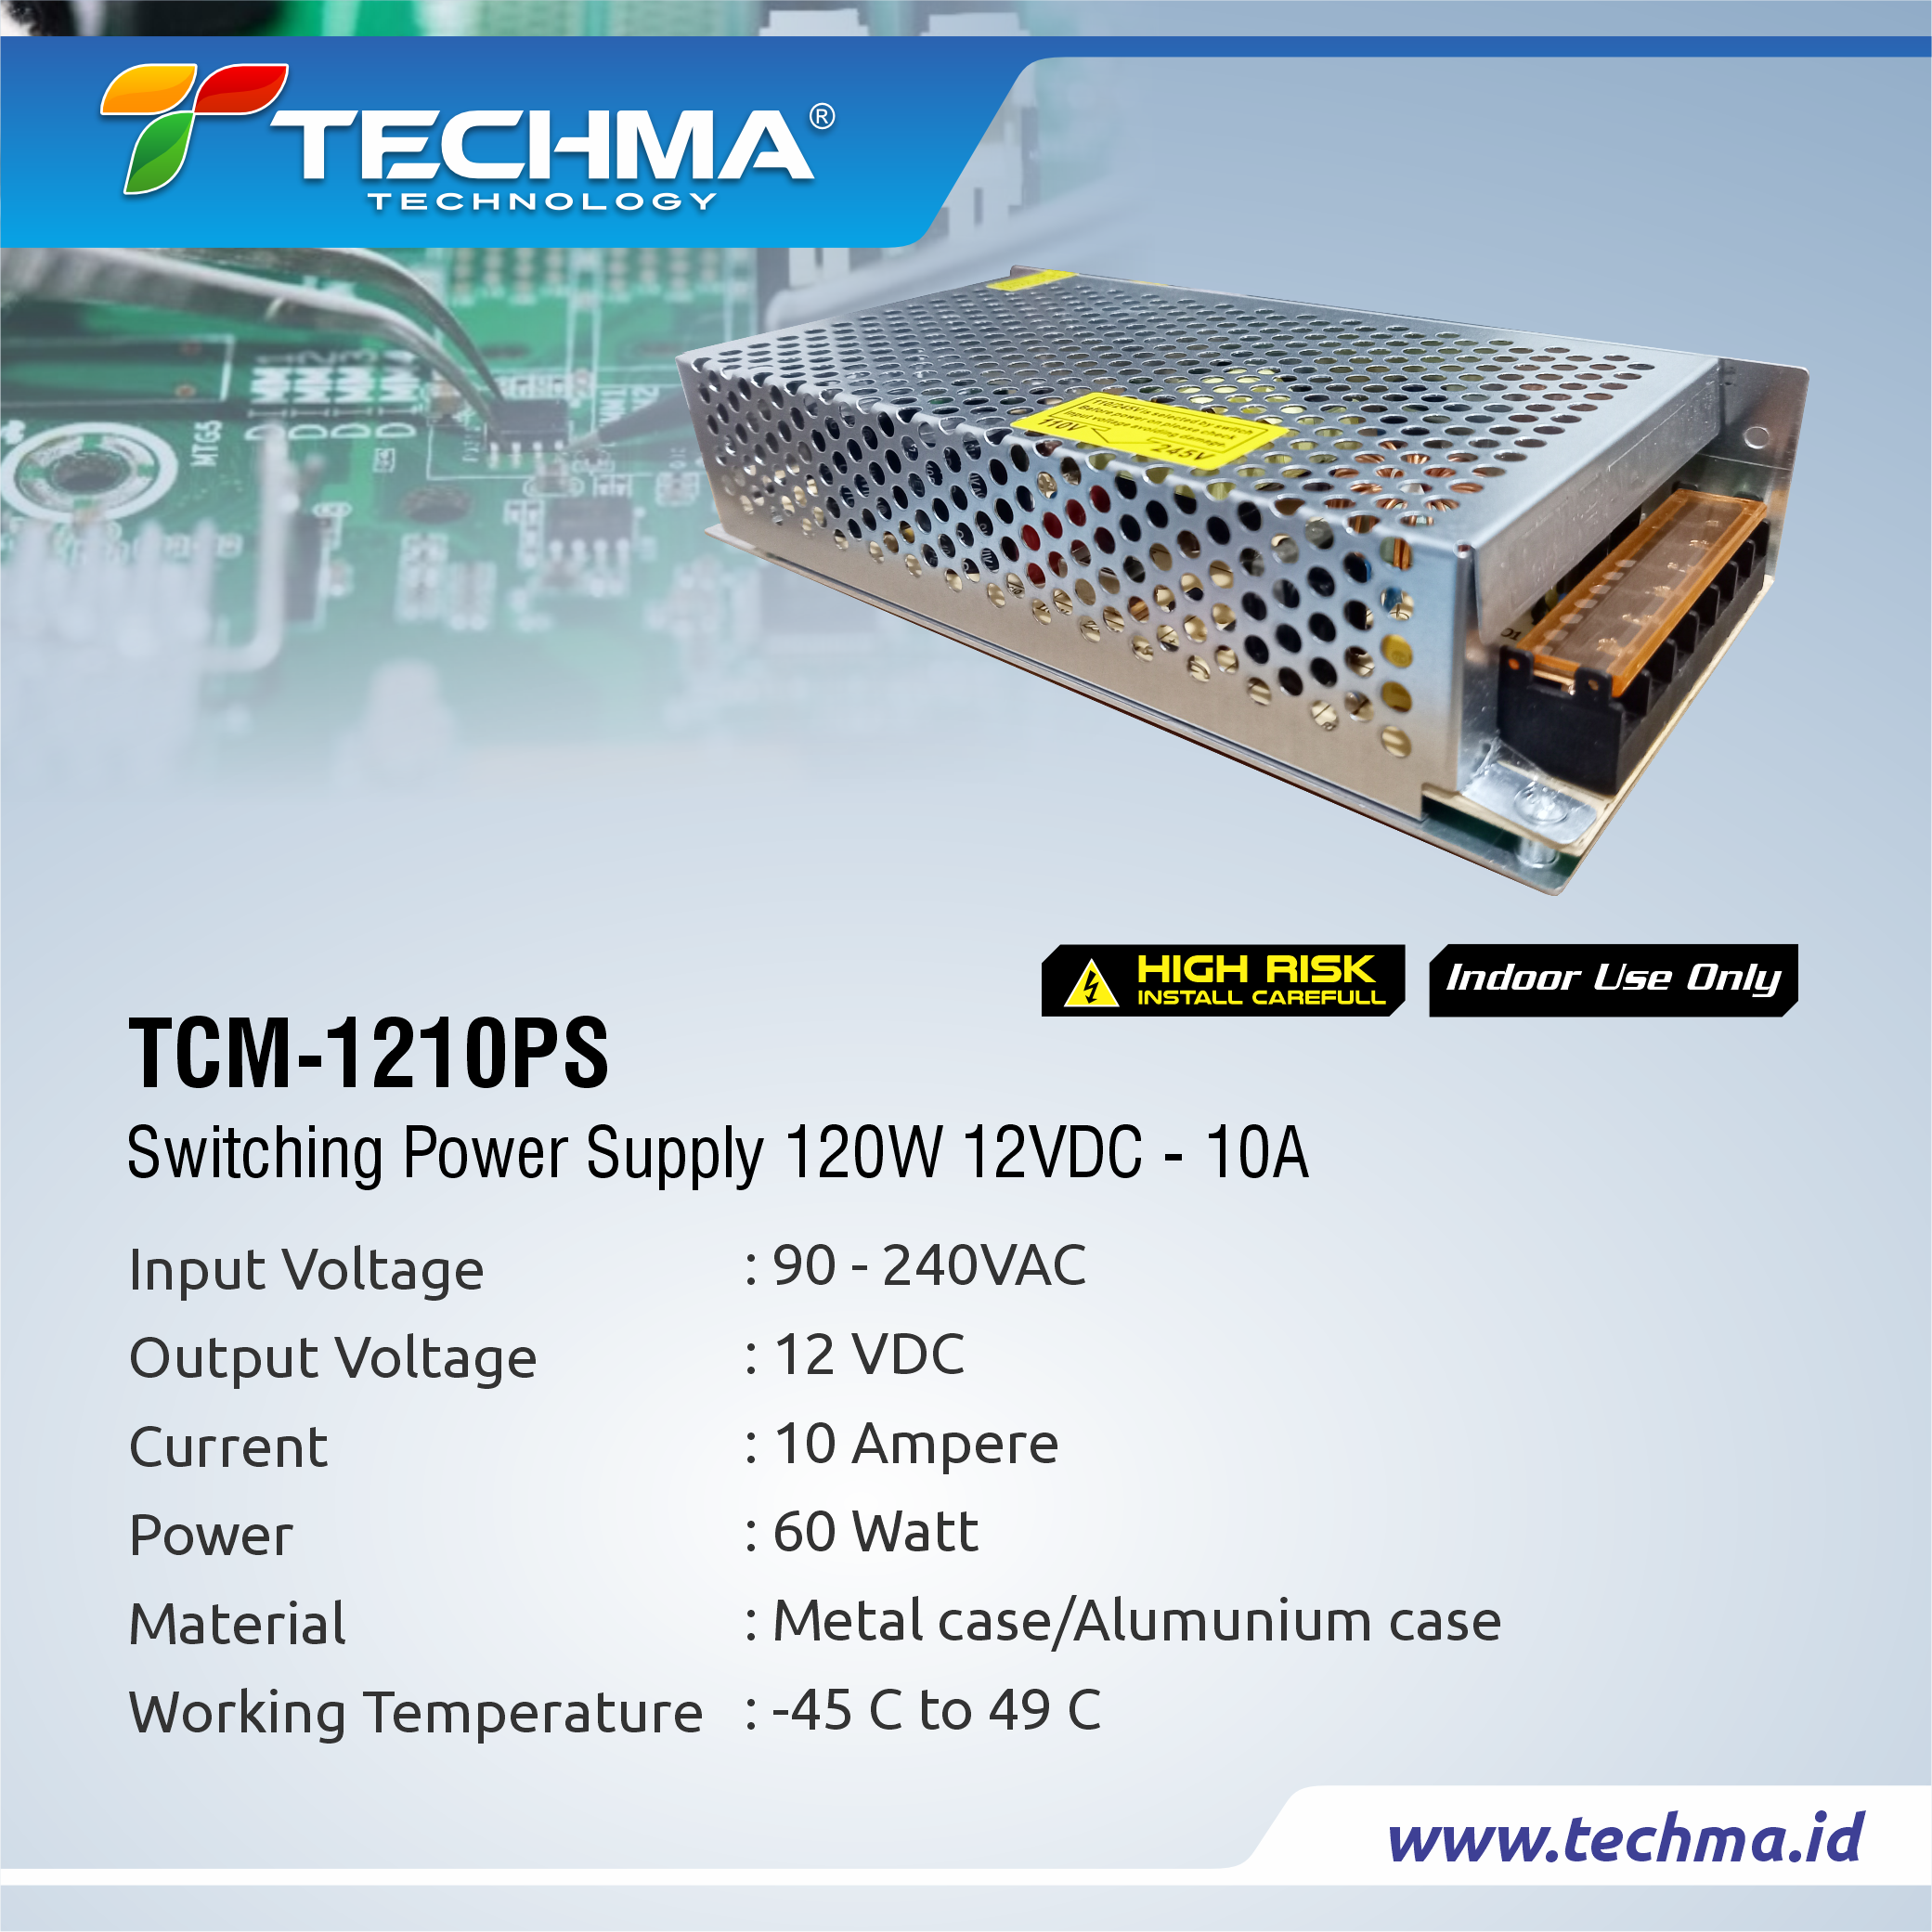 TCM-1210PS web 2